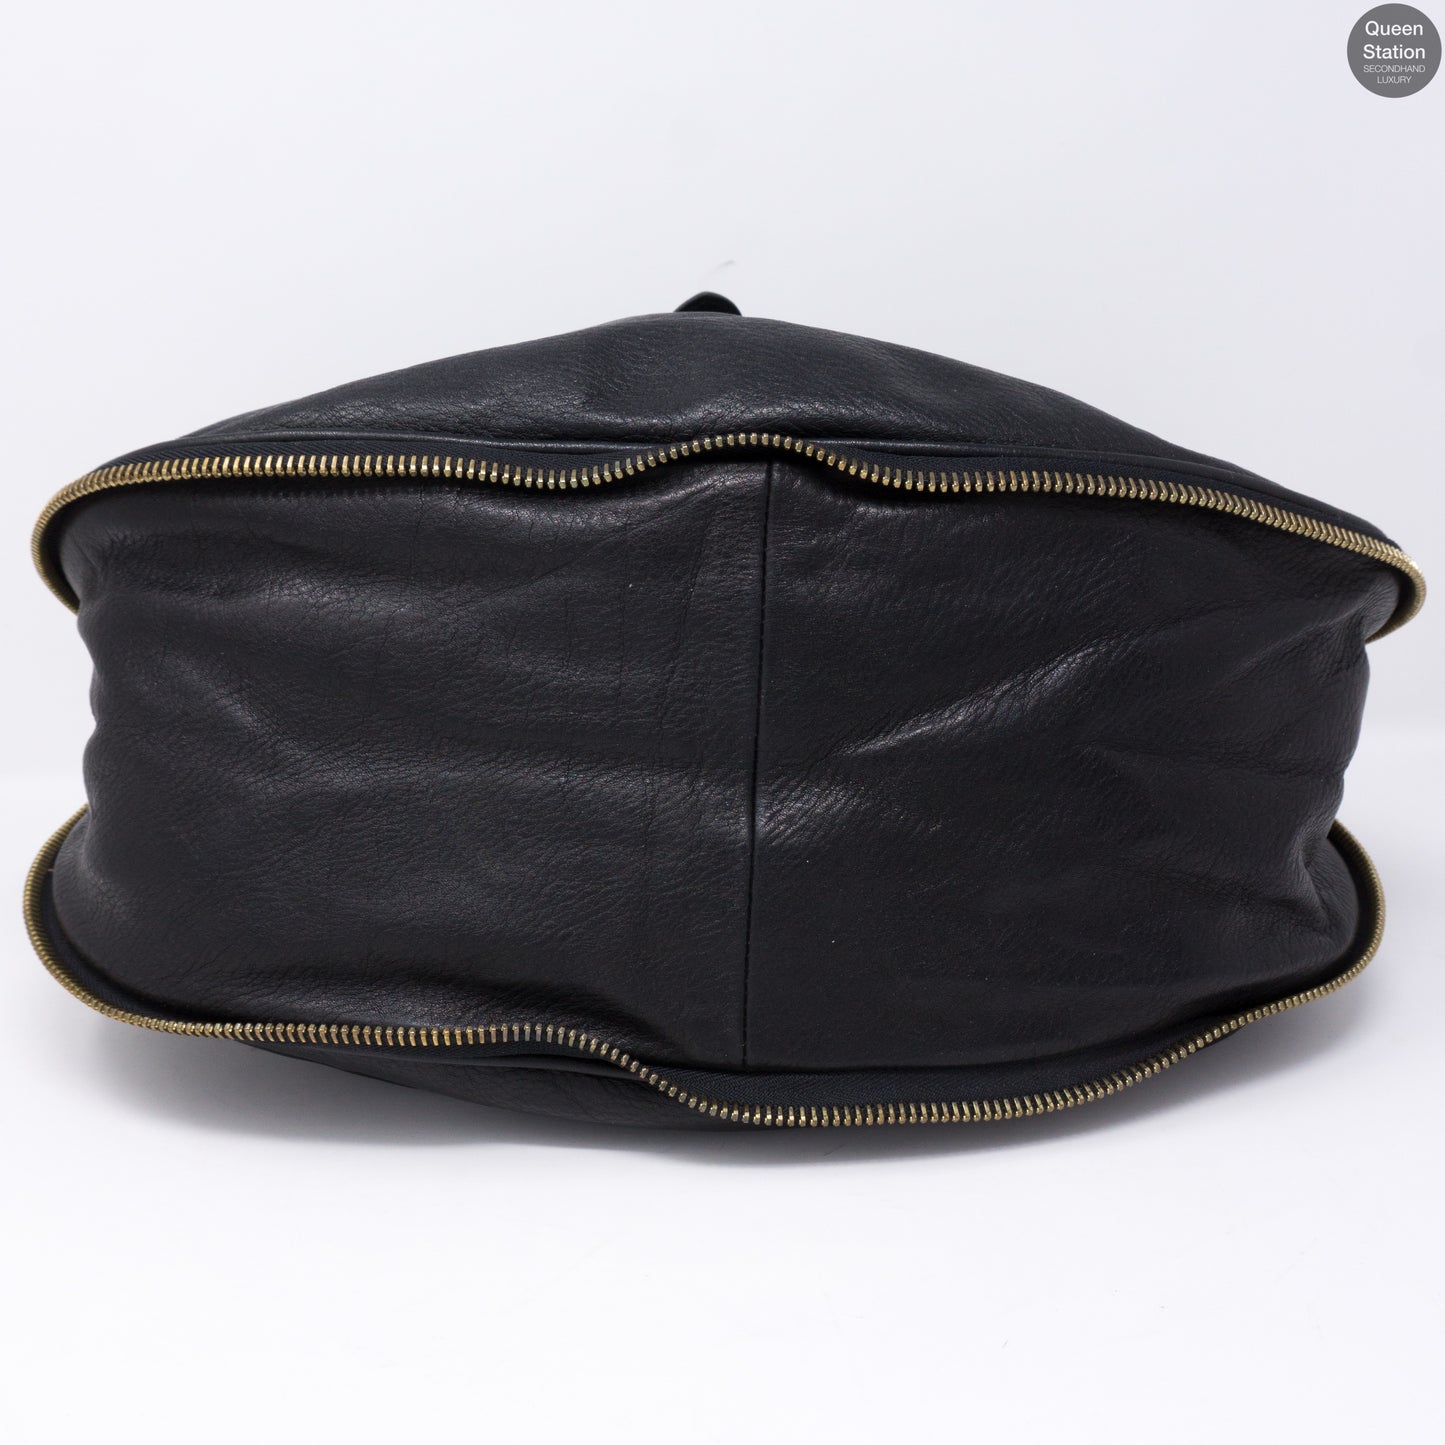 Mabel Hobo Shoulderbag Black Leather